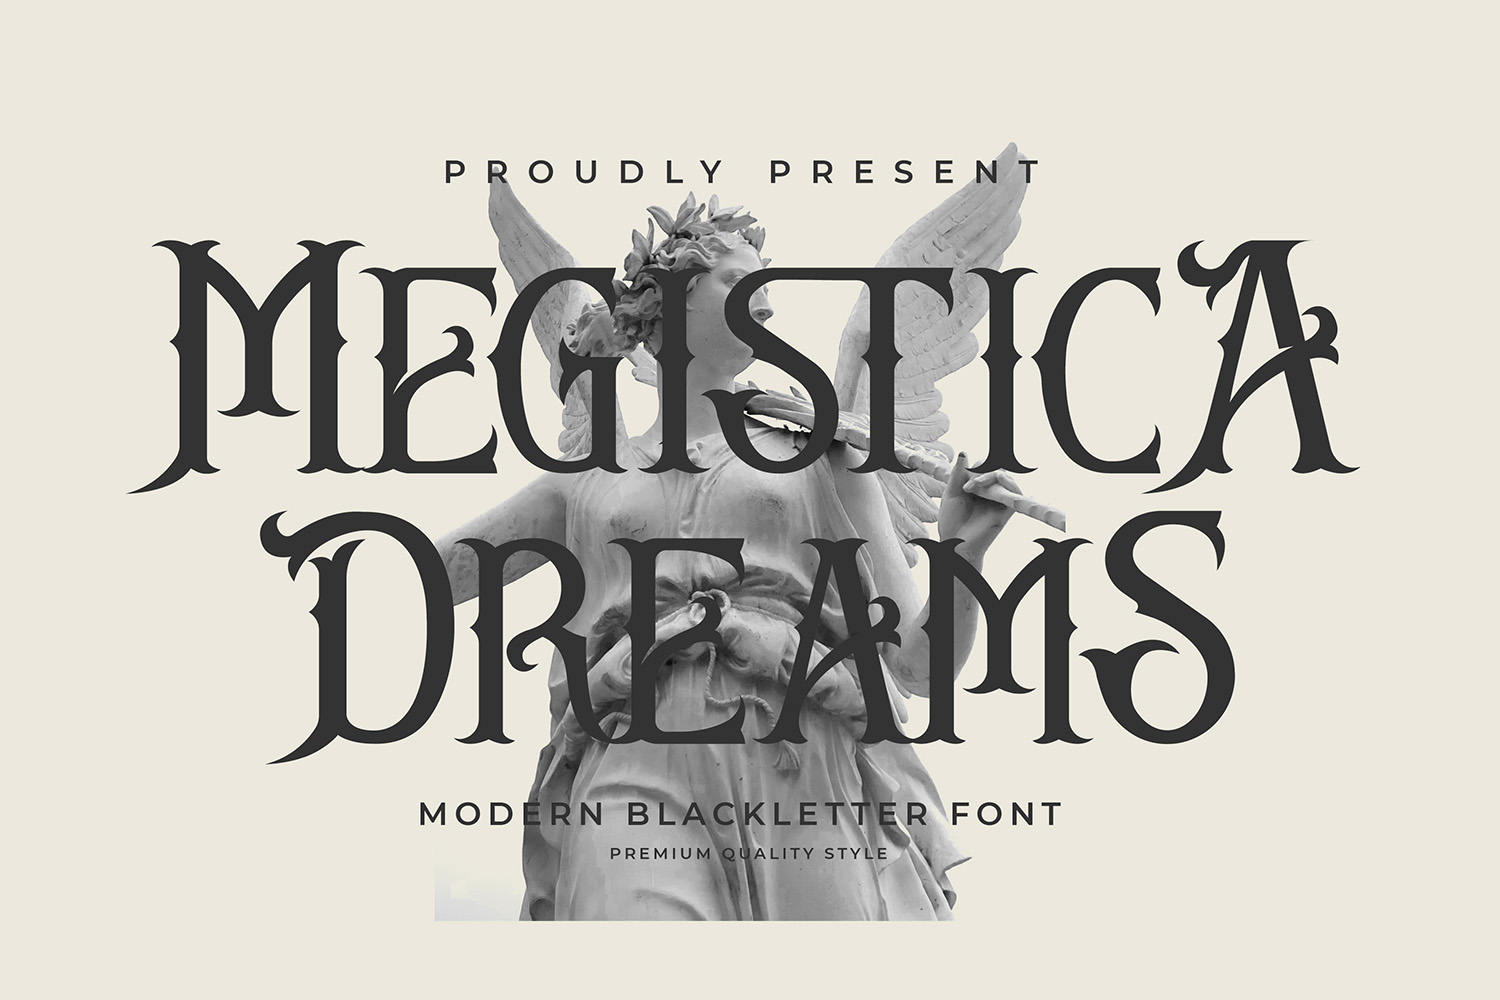 Megistica Dreams Free Font